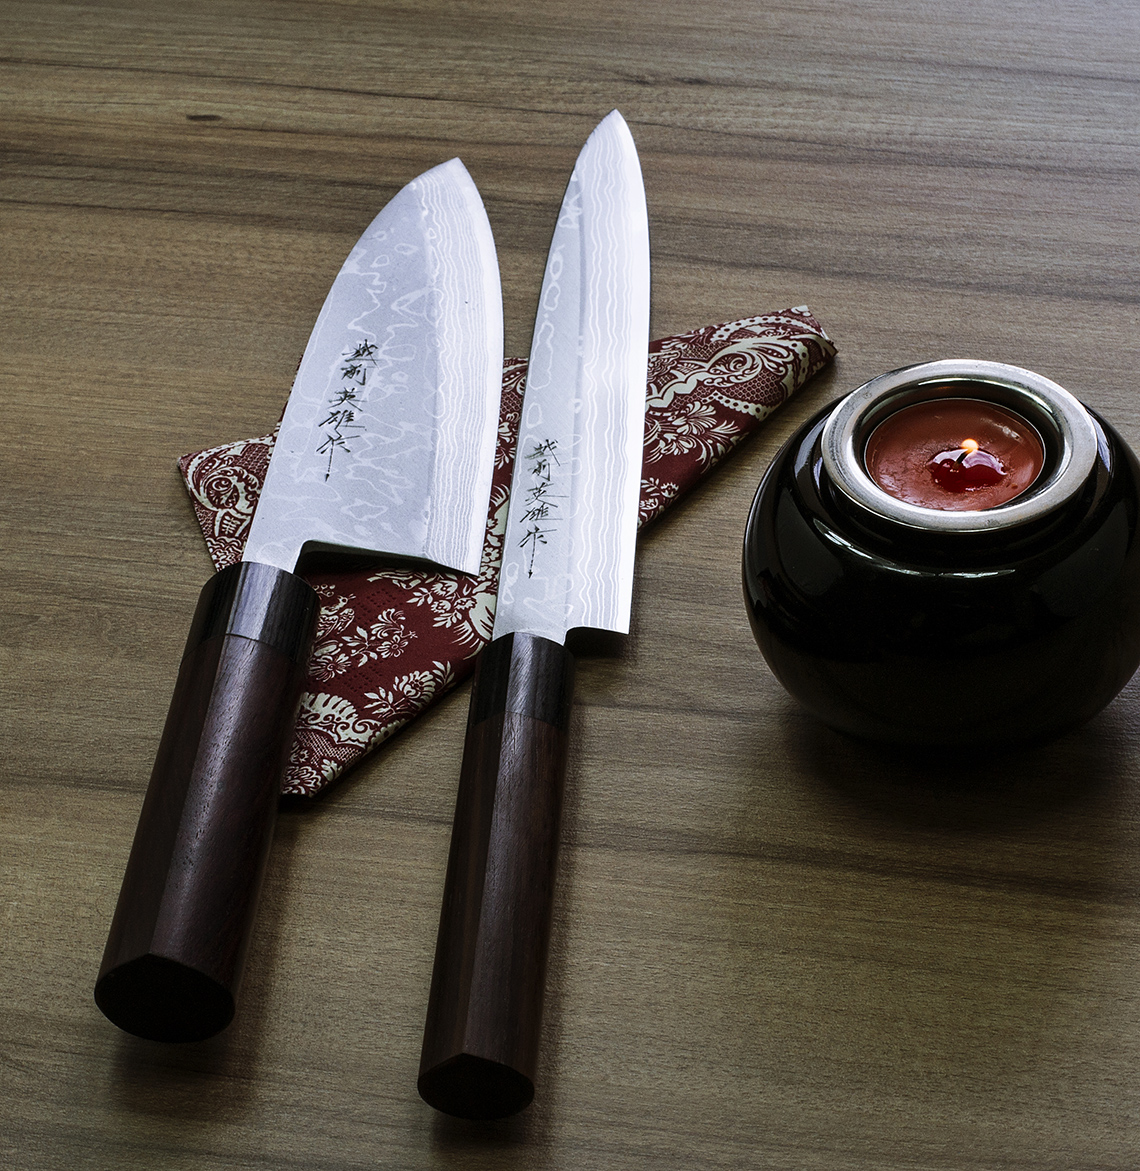 By wykuć prawdziwy, doskonały japoński nóż, potrzeba czasem lat szkolenia